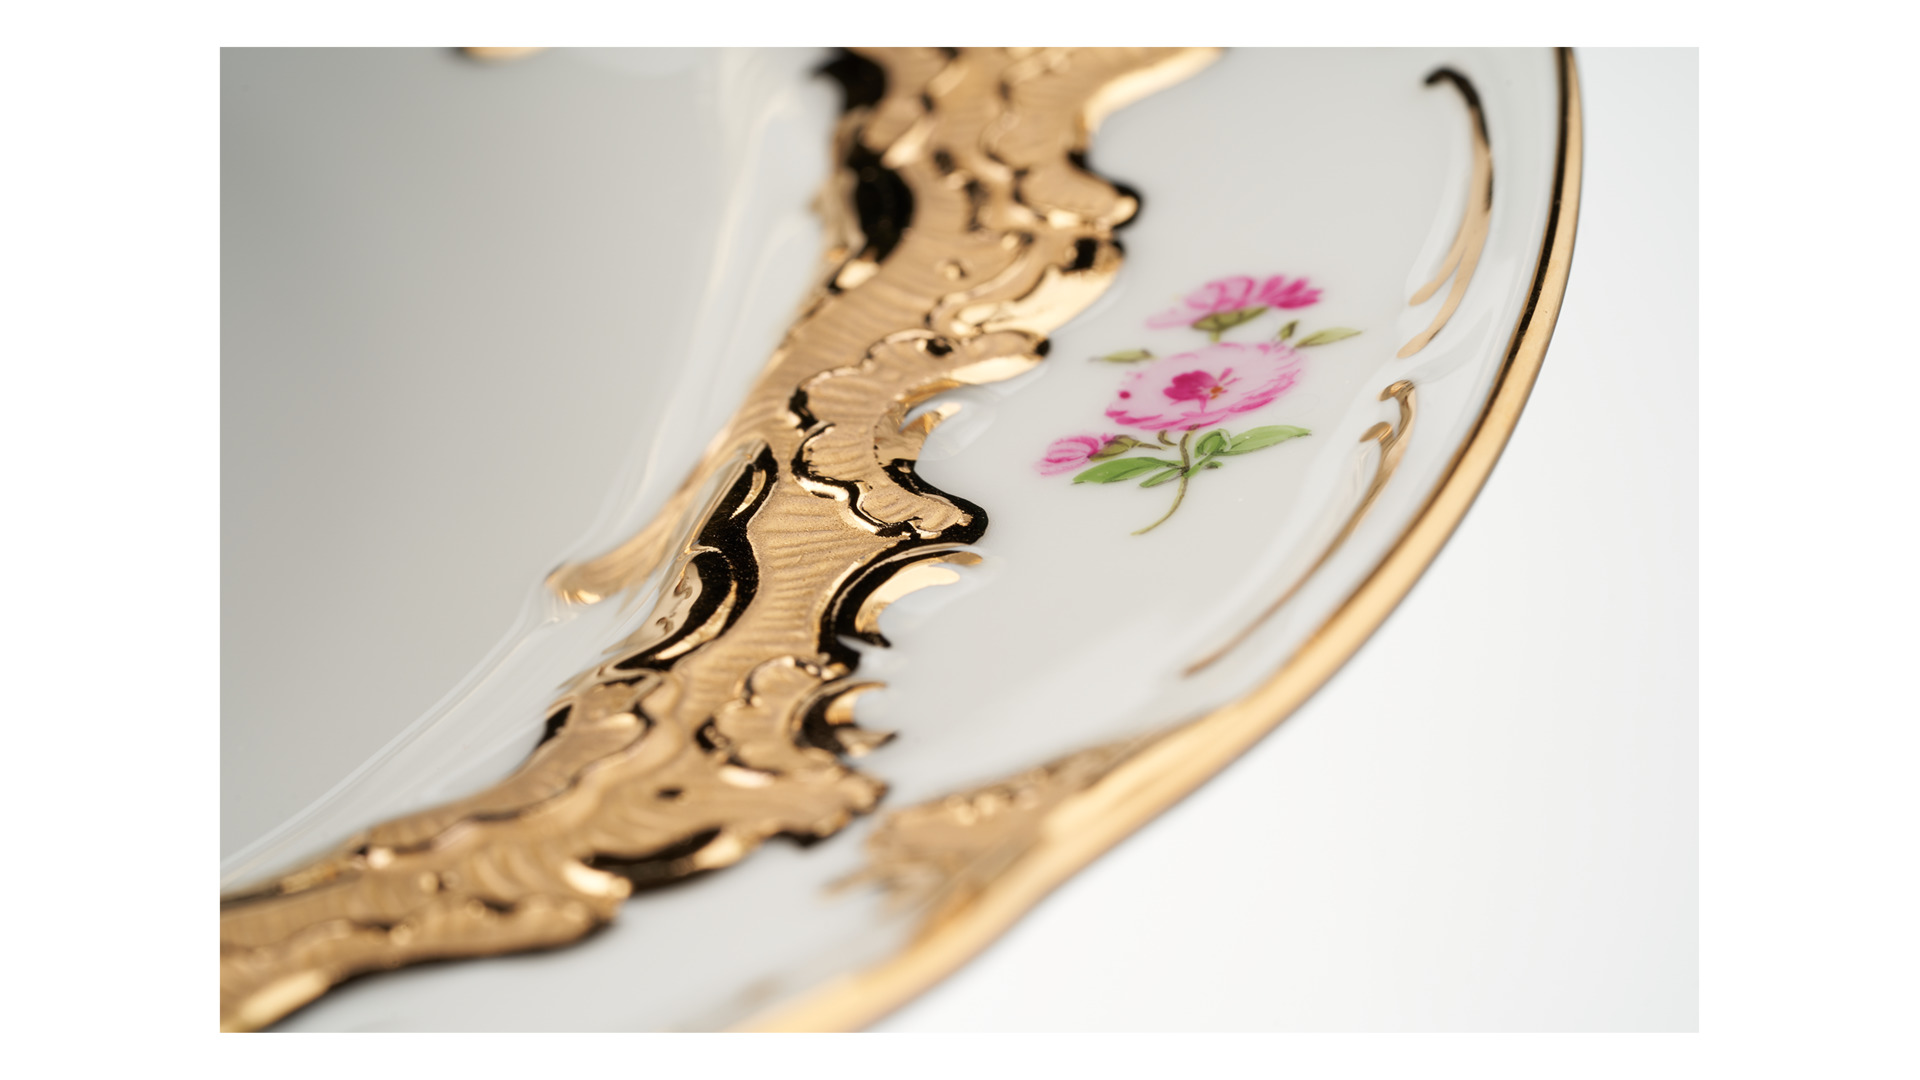 Сервиз столовый Meissen Форма - Б, россыпь цветов на 6 персон 20 предметов, фарфор